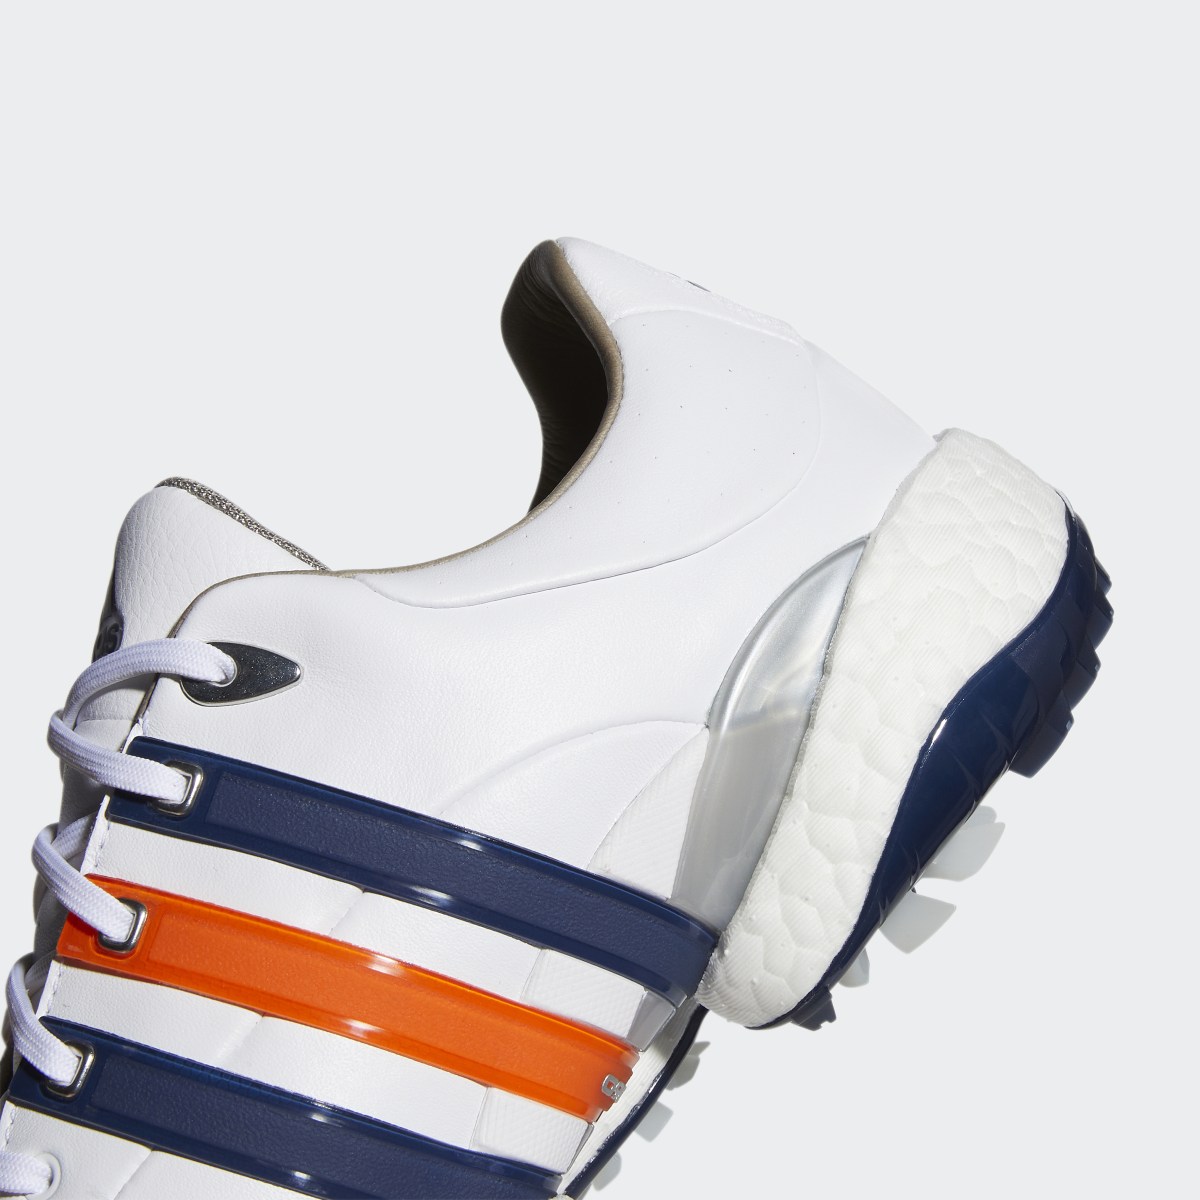 Adidas DJ Gretzky Tour360 22 Golf Shoes. 4